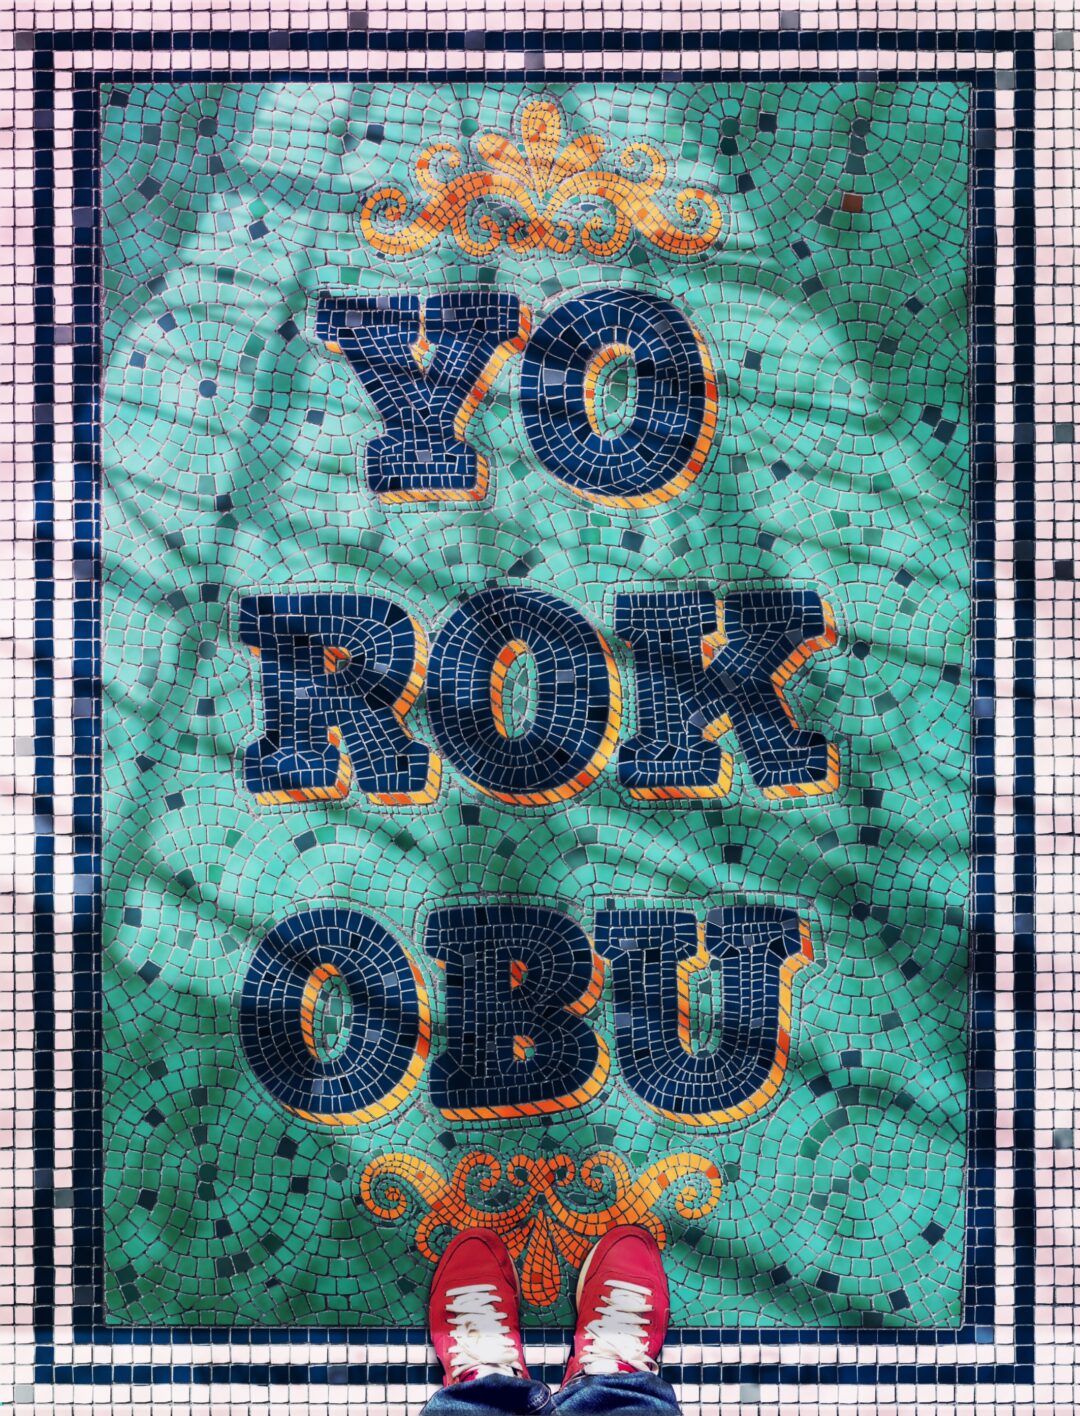 Yorokobu’s cover annual contest